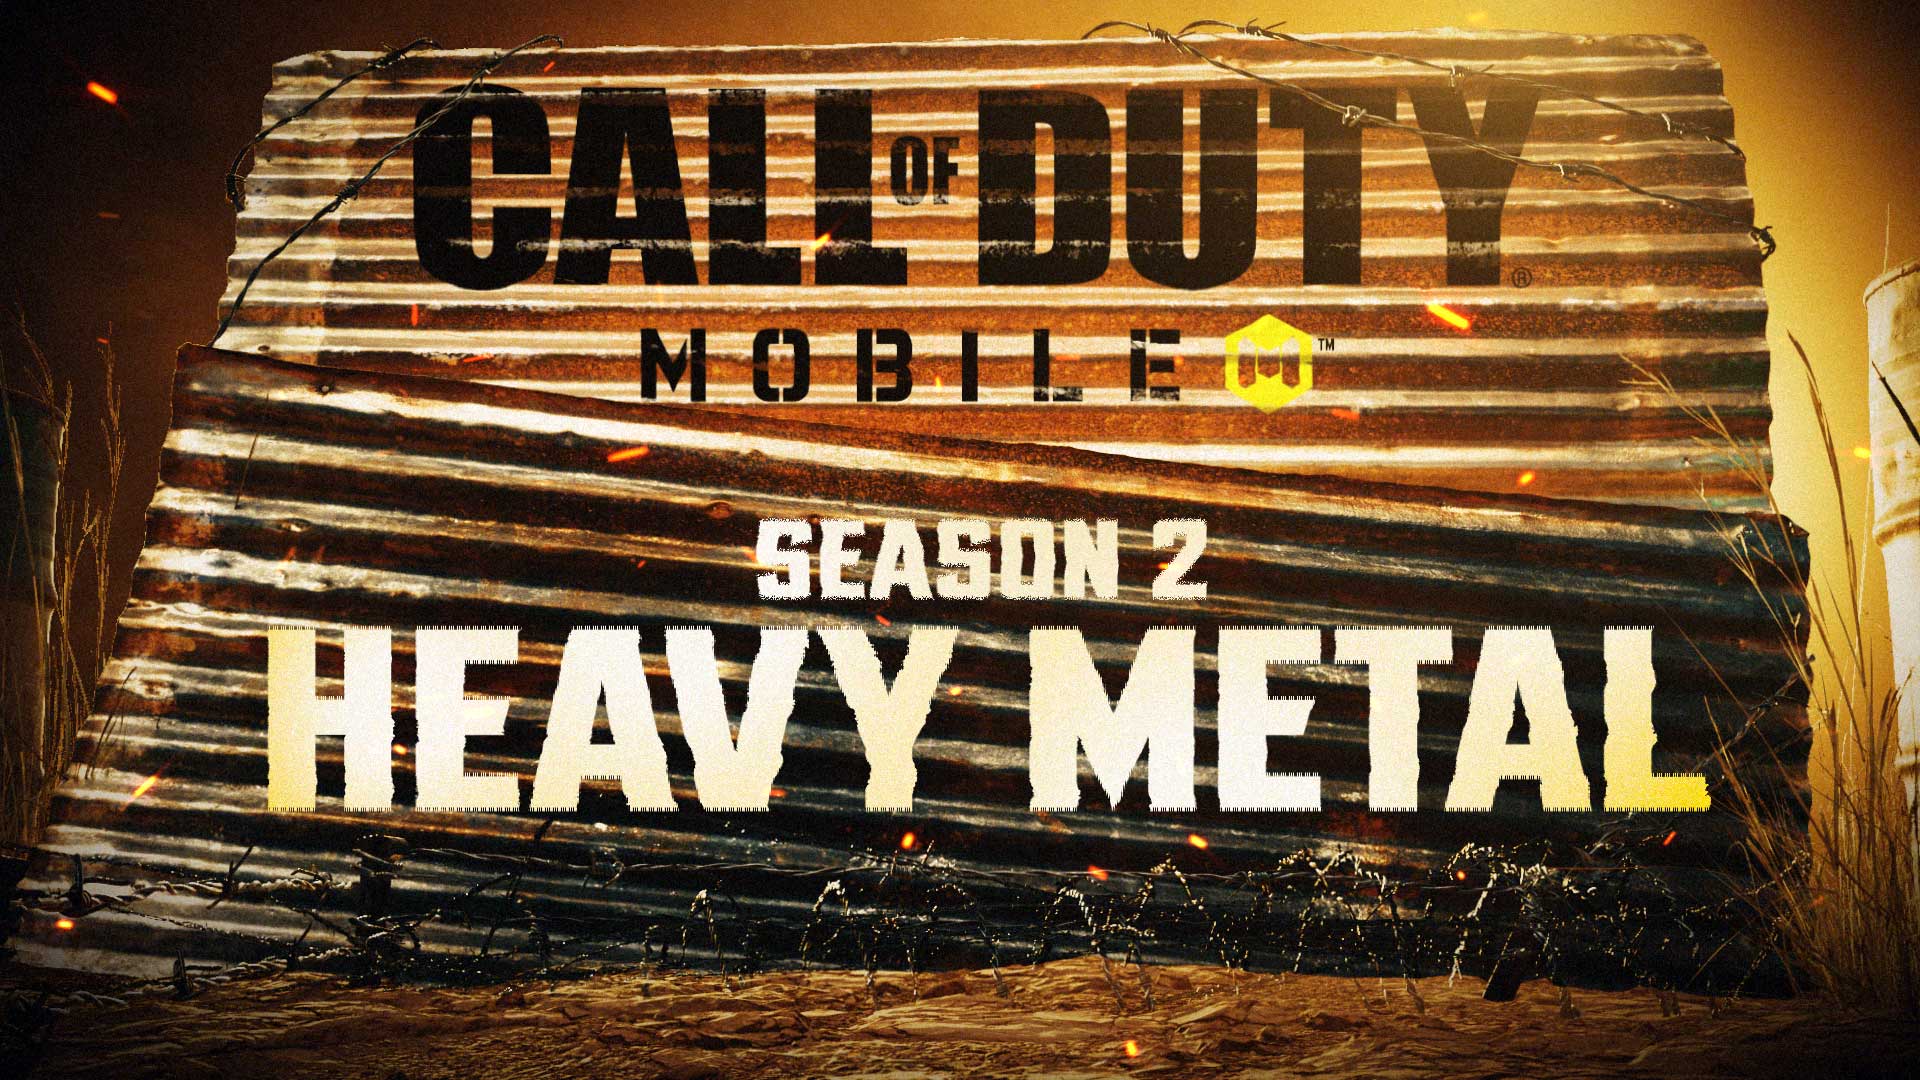 Atualização da Temporada 2 Heavy Metal do COD Mobile image